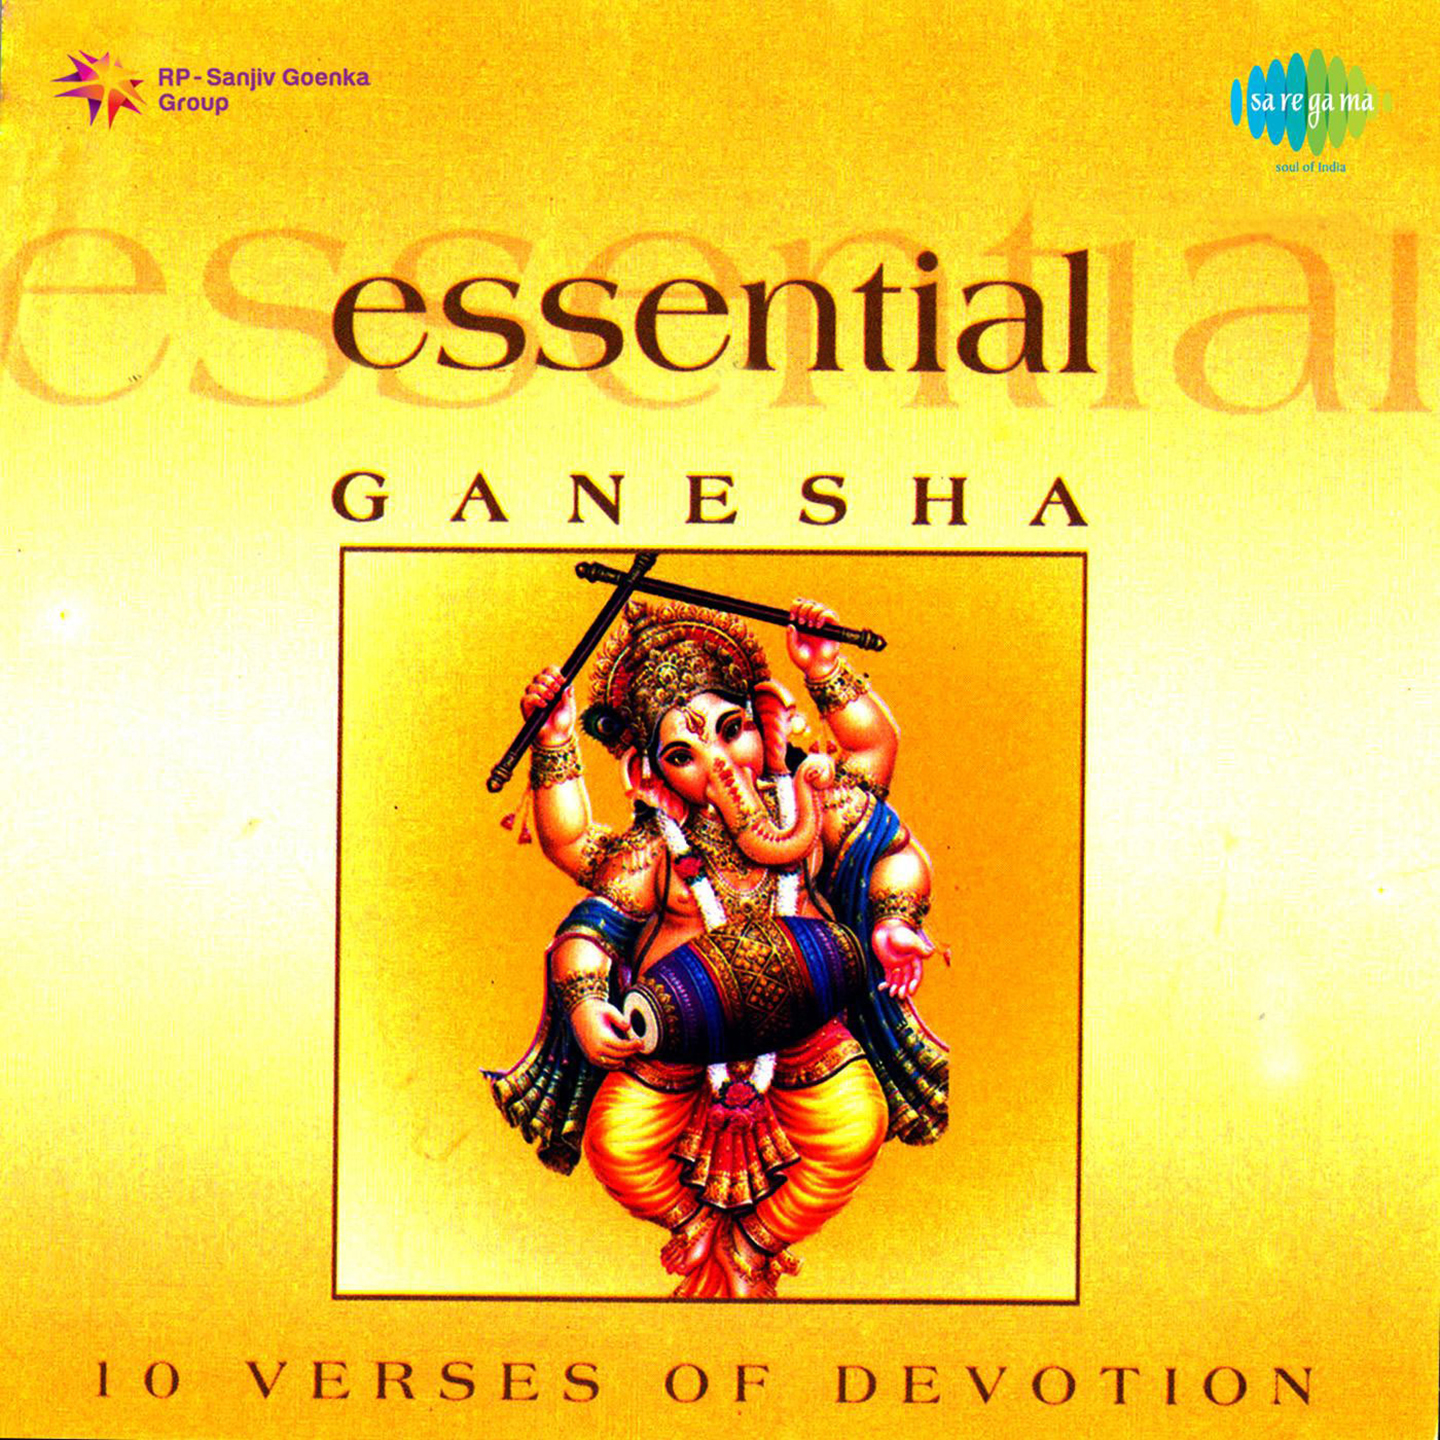 Essential Ganesha